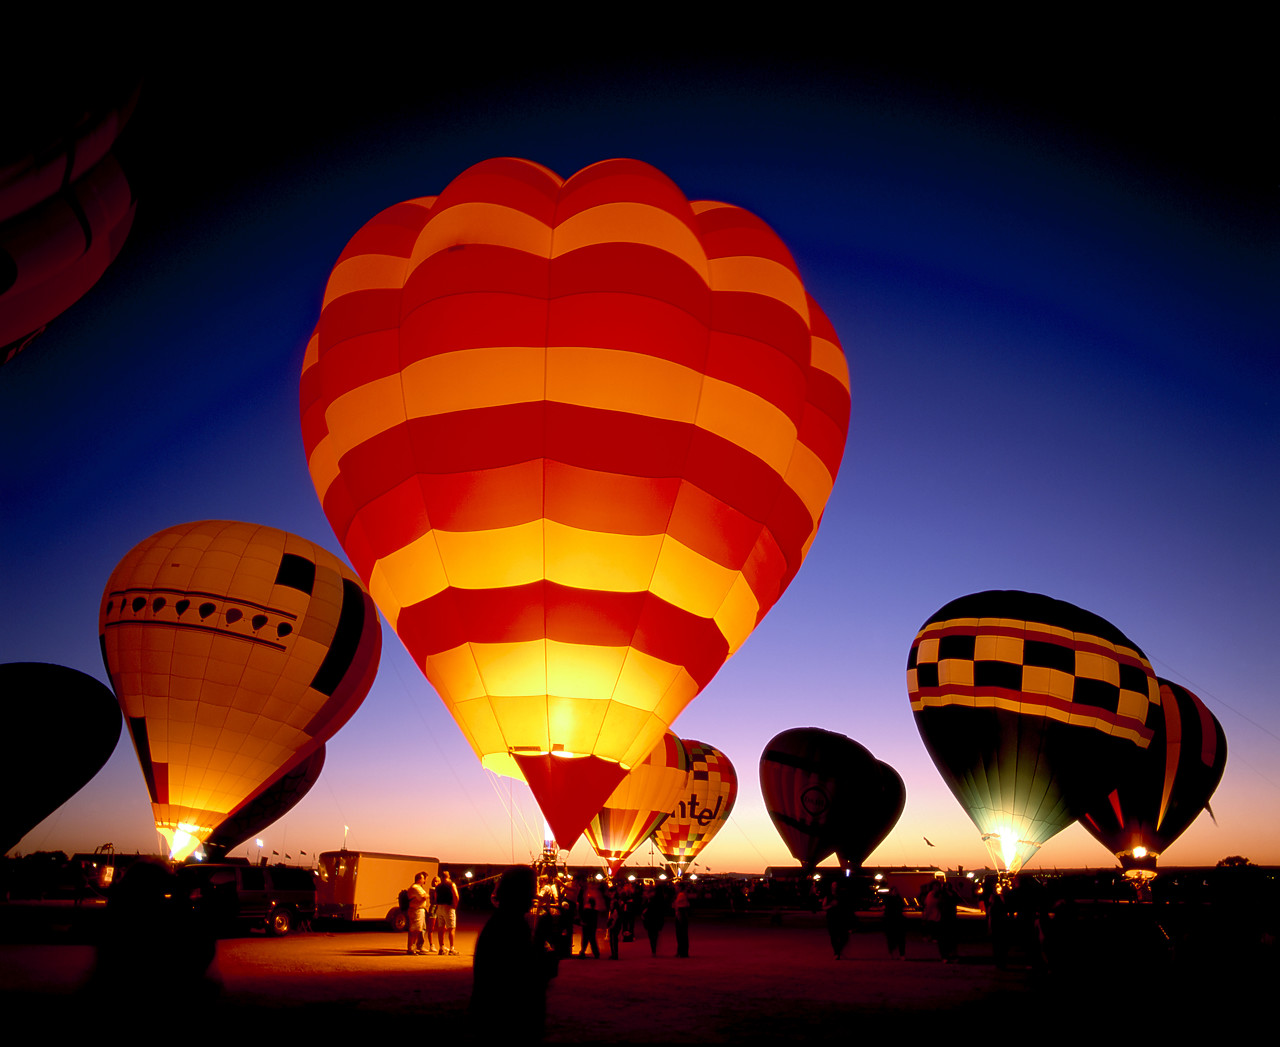 #990603-2 - Hot Air Balloons at Twilight, Albuquerque, New Mexico, USA